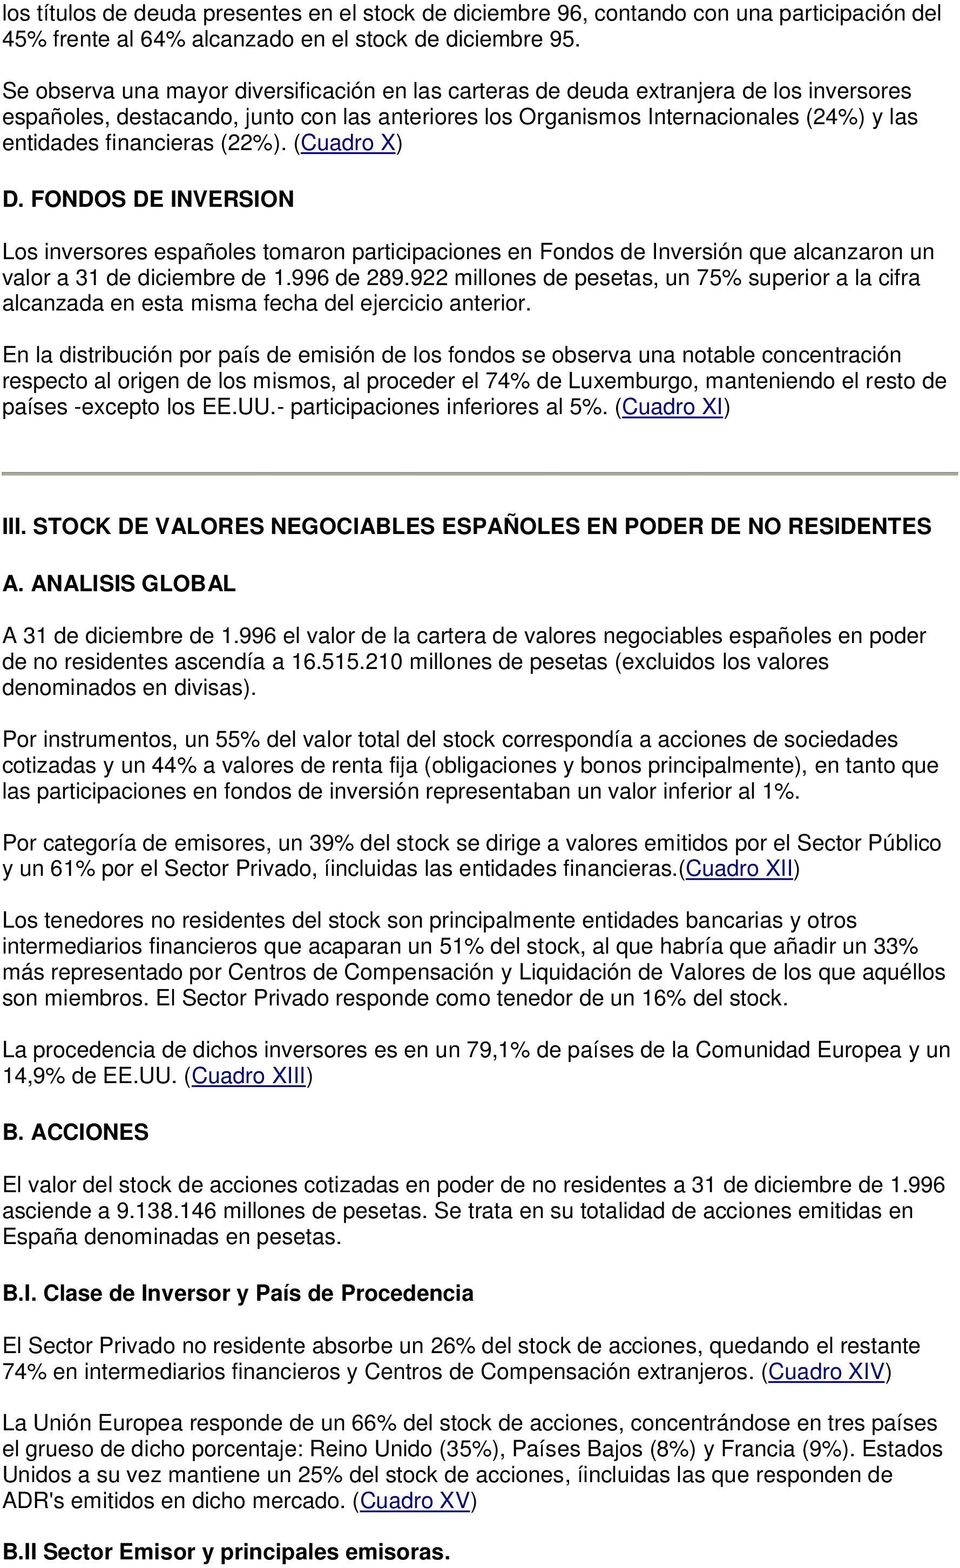 financieras (22%). (Cuadro X) D. FONDOS DE INVERSION Los inversores españoles tomaron participaciones en Fondos de Inversión que alcanzaron un valor a 31 de diciembre de 1.996 de 289.